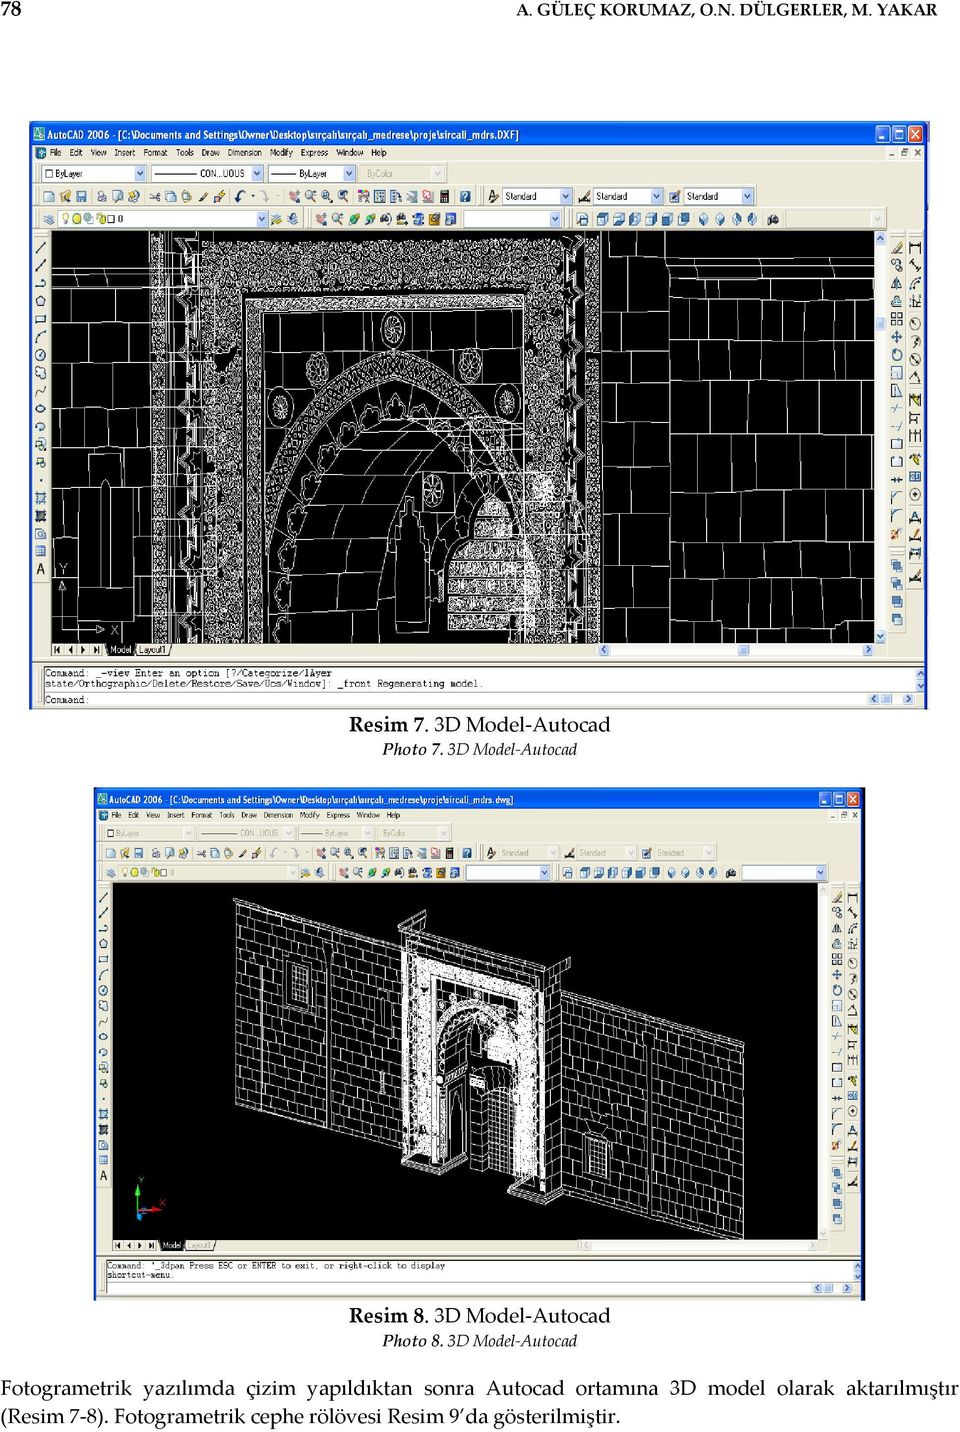 3D Model Autocad Fotogrametrik yazılımda çizim yapıldıktan sonra Autocad